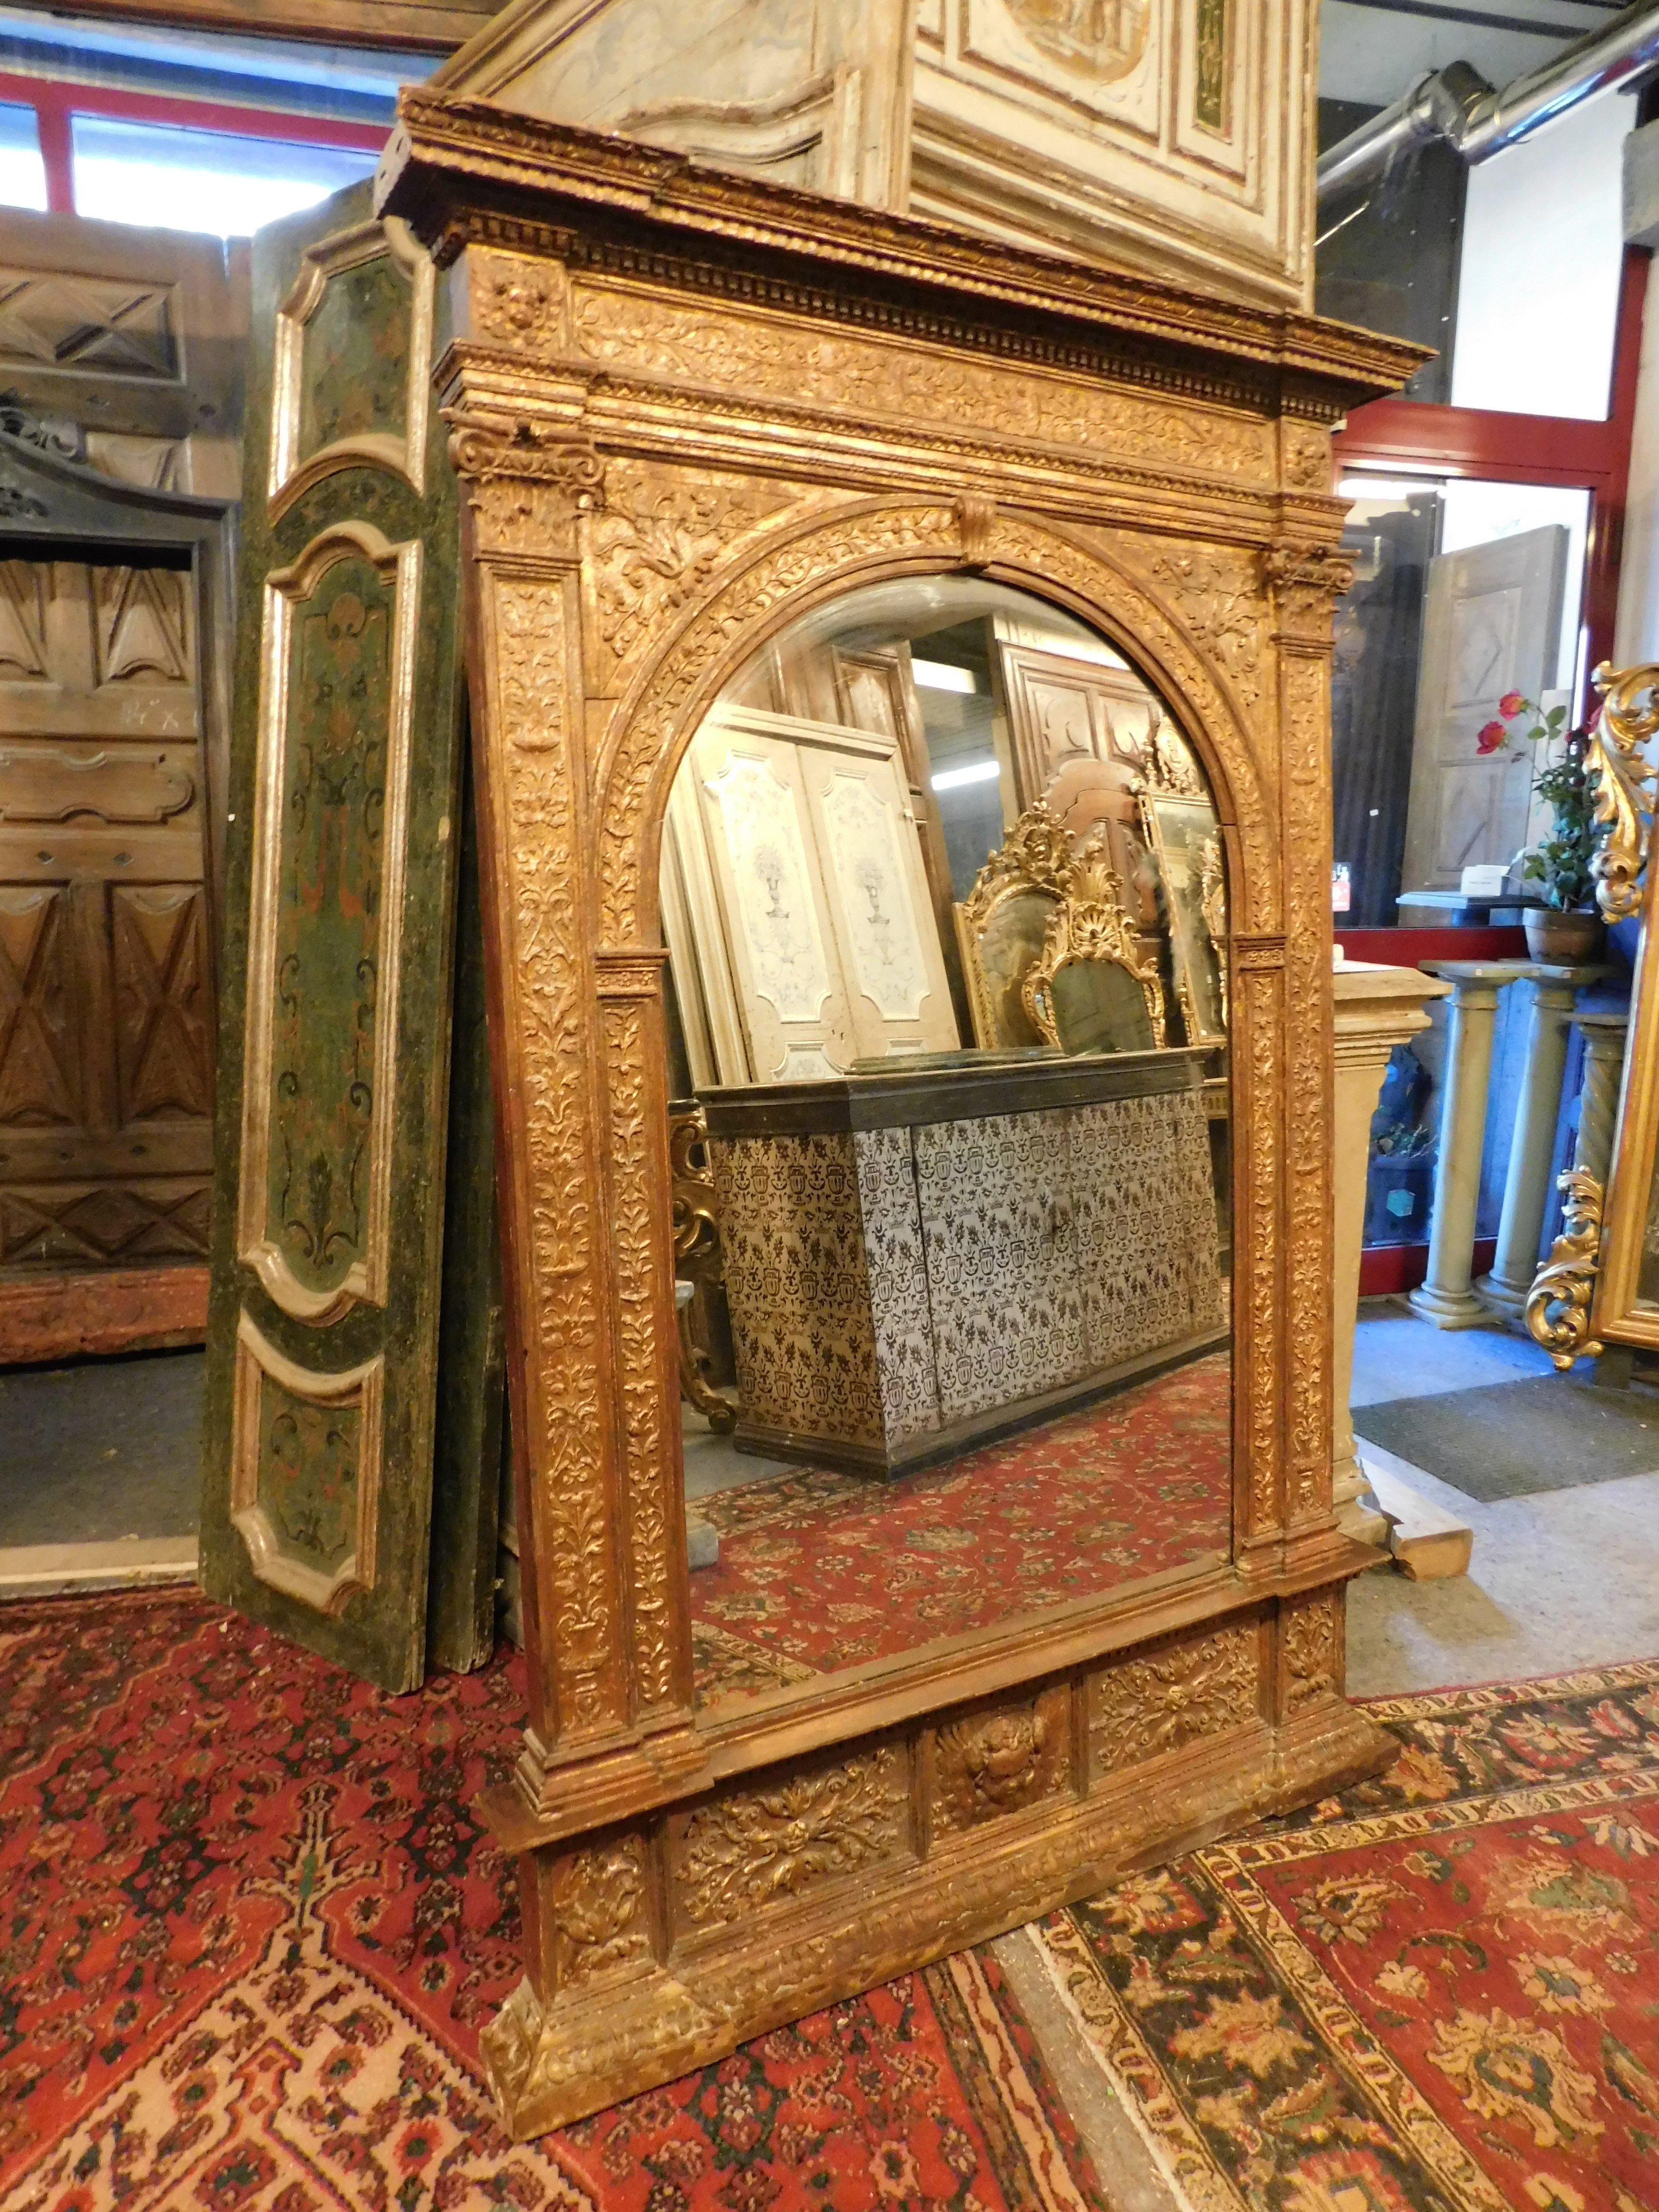 Ancien miroir rectangulaire doré et richement sculpté à la main avec cadre en bois, construit au milieu du XIXe siècle pour un palais en Italie (Florence).
dimensions extérieures maximales en cm l 136 x h 198, avec chapeau en saillie et miroir